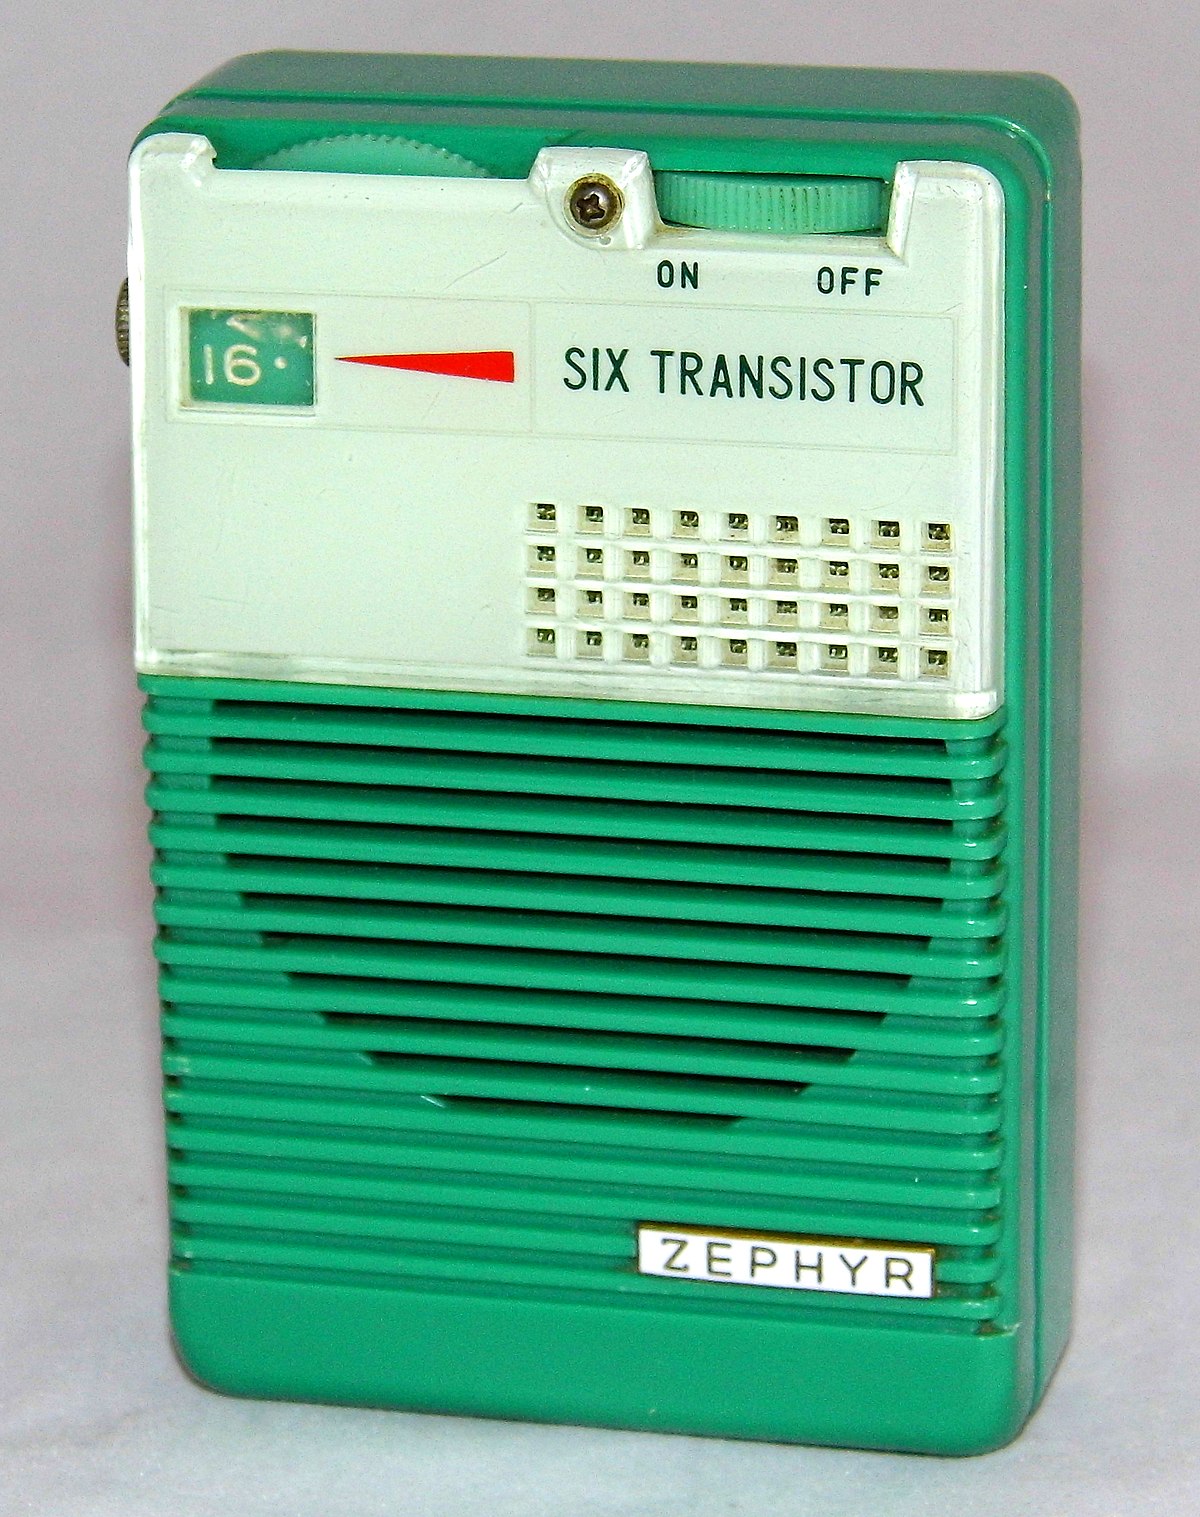 File:Vintage Zephyr Transistor Radio (Green), Model GR-3T6, AM 